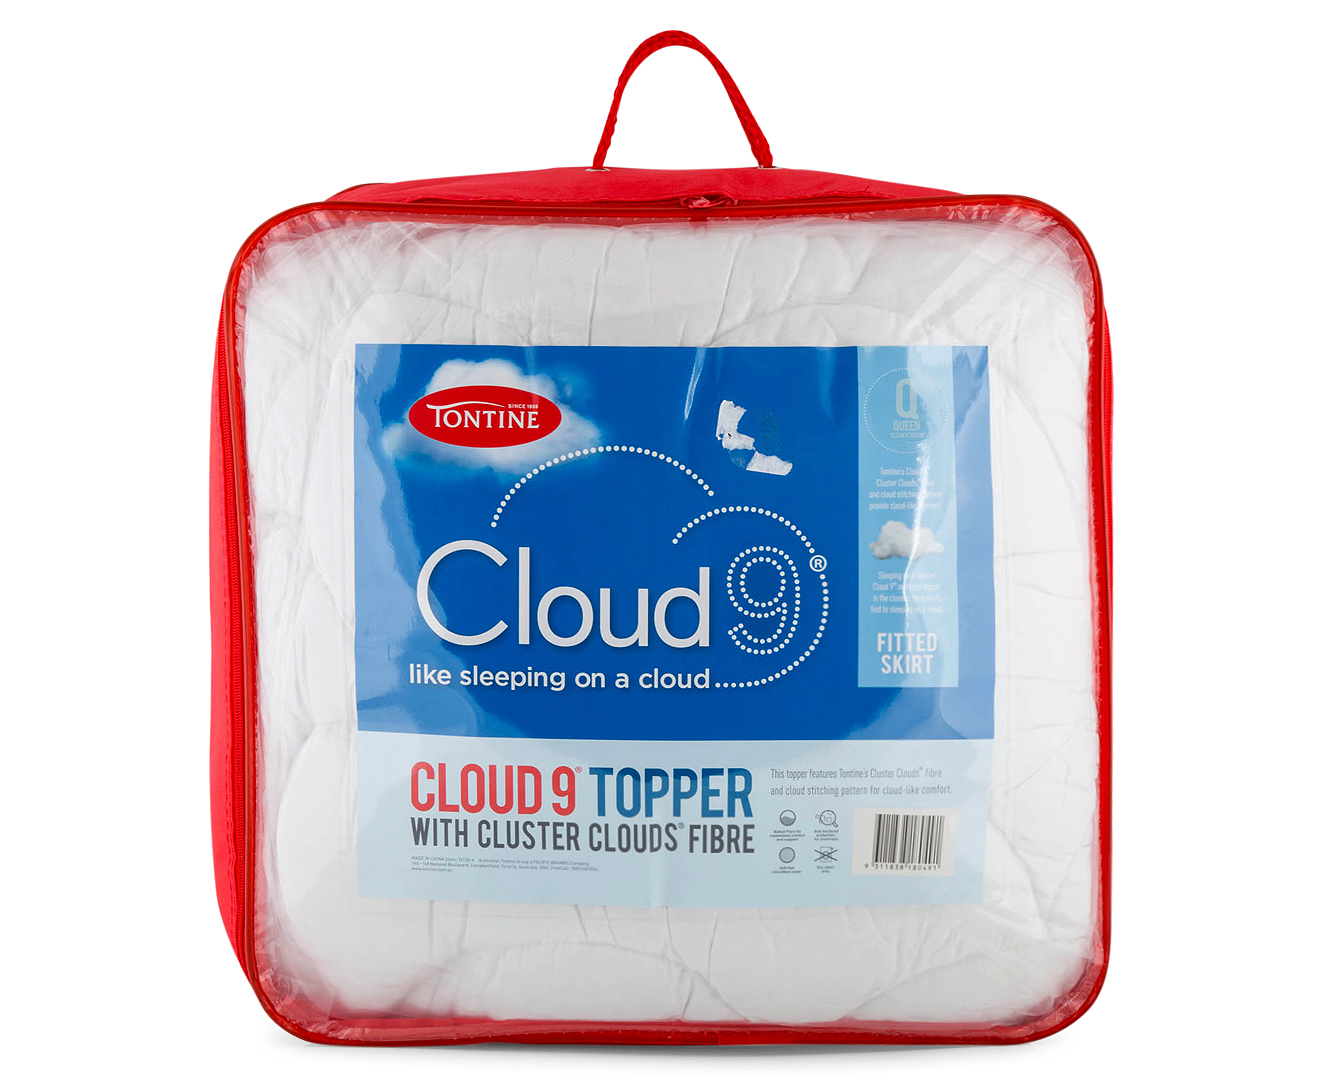 cloud 9 mattress topper review